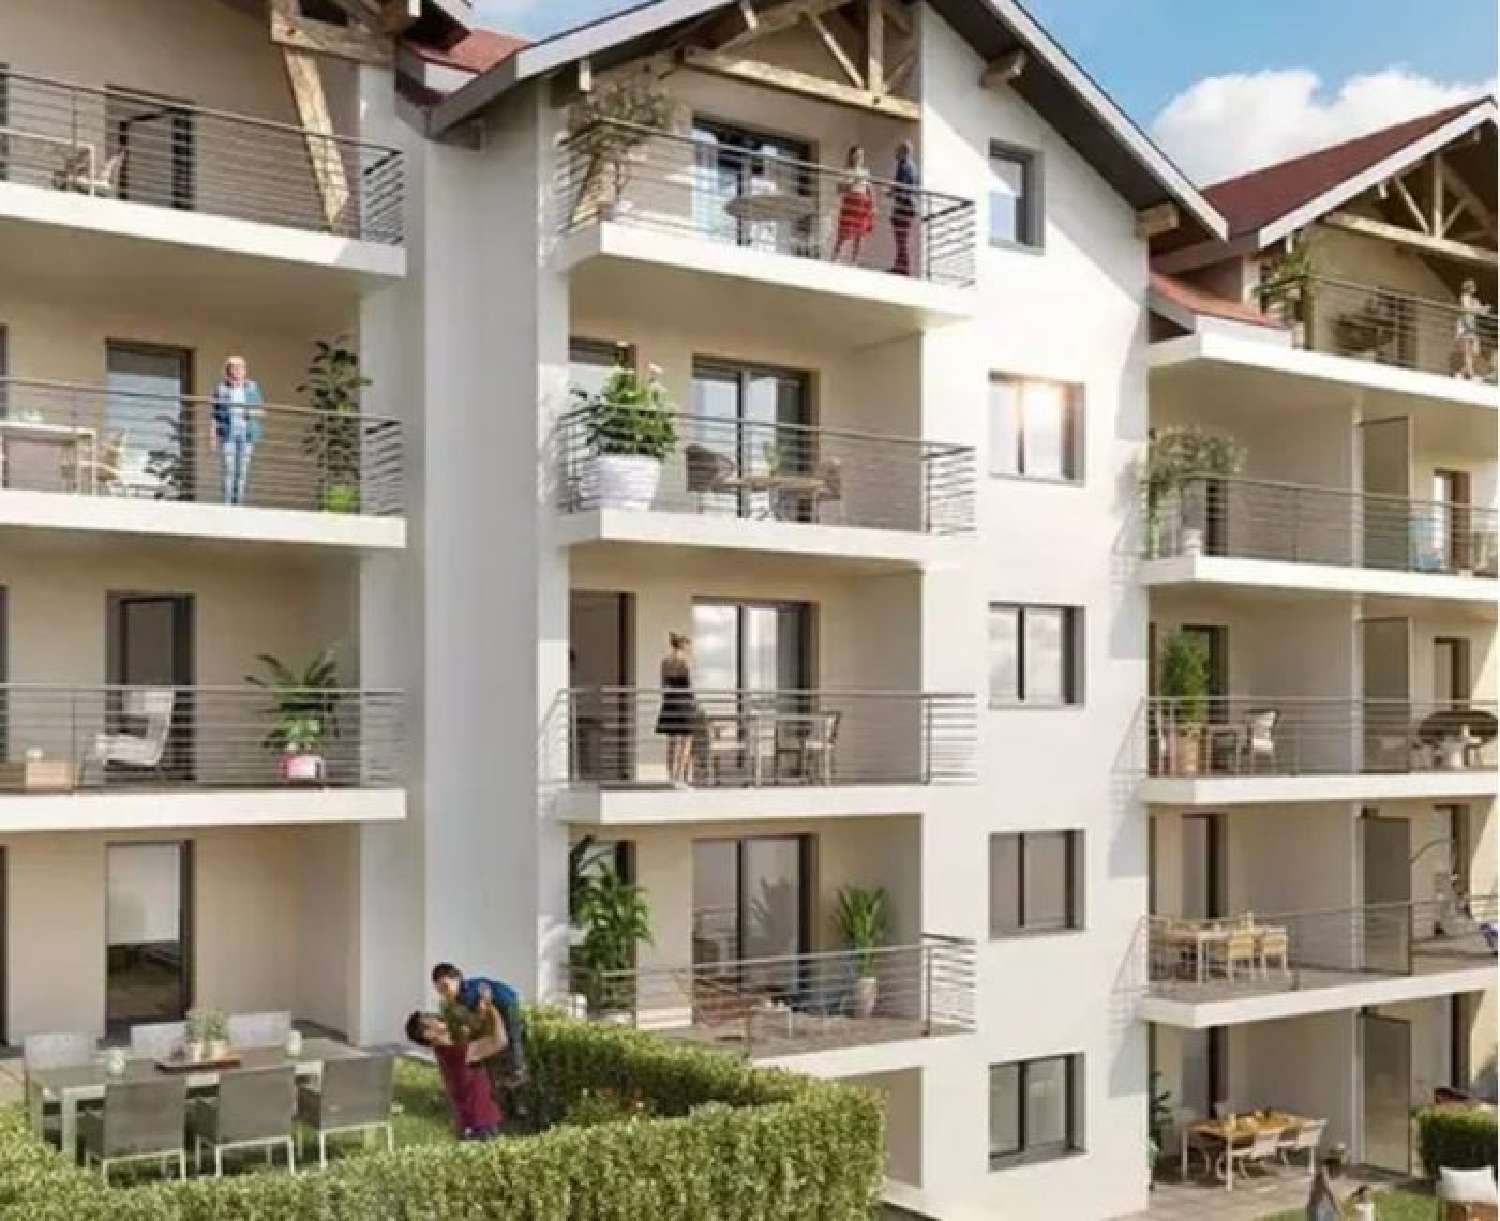 Frangy Haute-Savoie Wohnung/ Apartment Bild 6814441